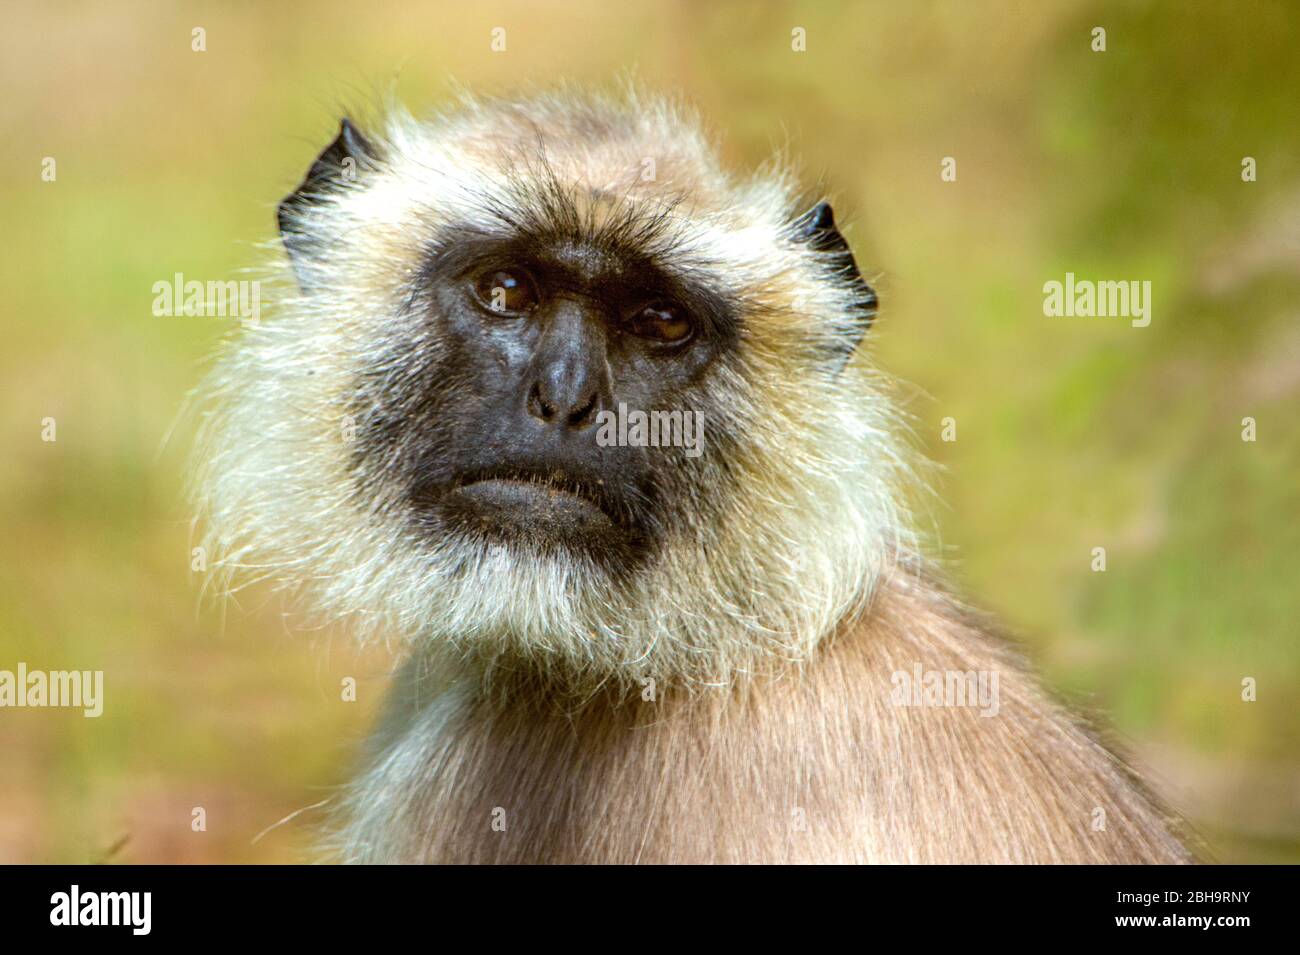 Close-up of langur monkey, India Stock Photo